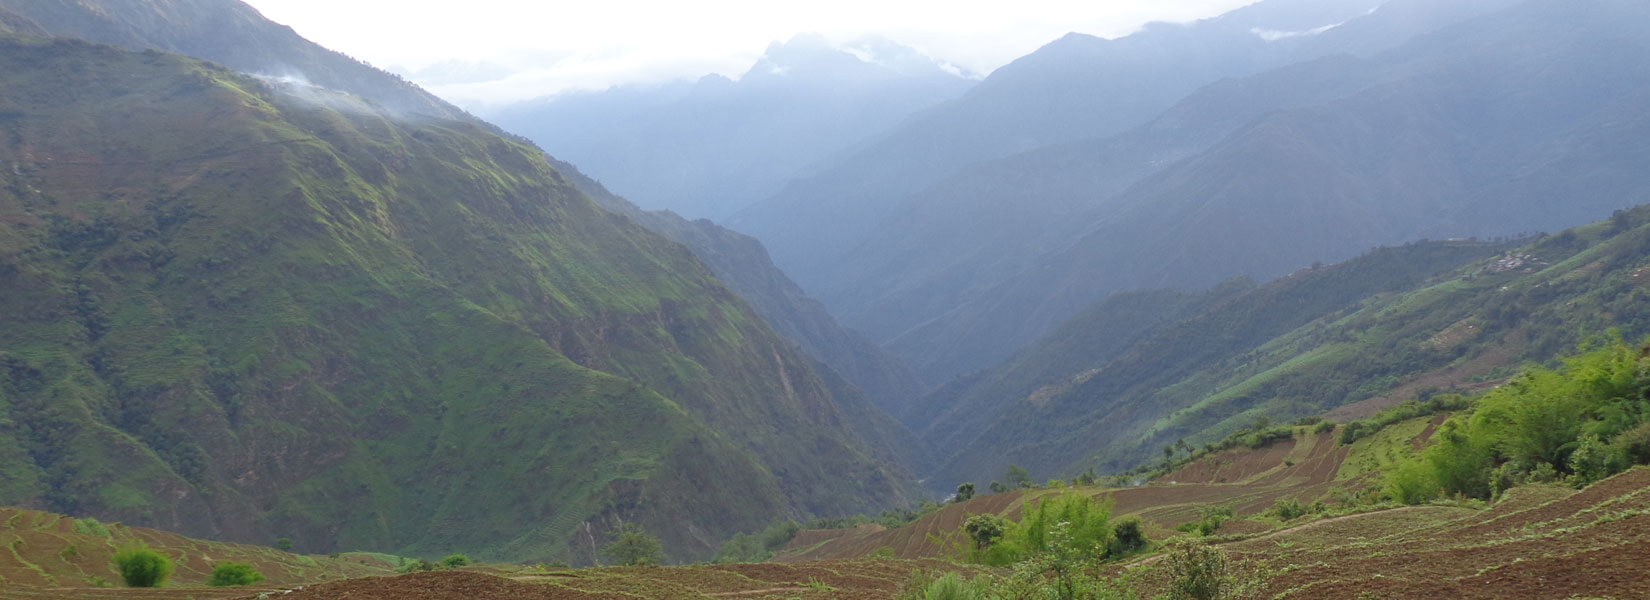 Ganesh Himal  Region